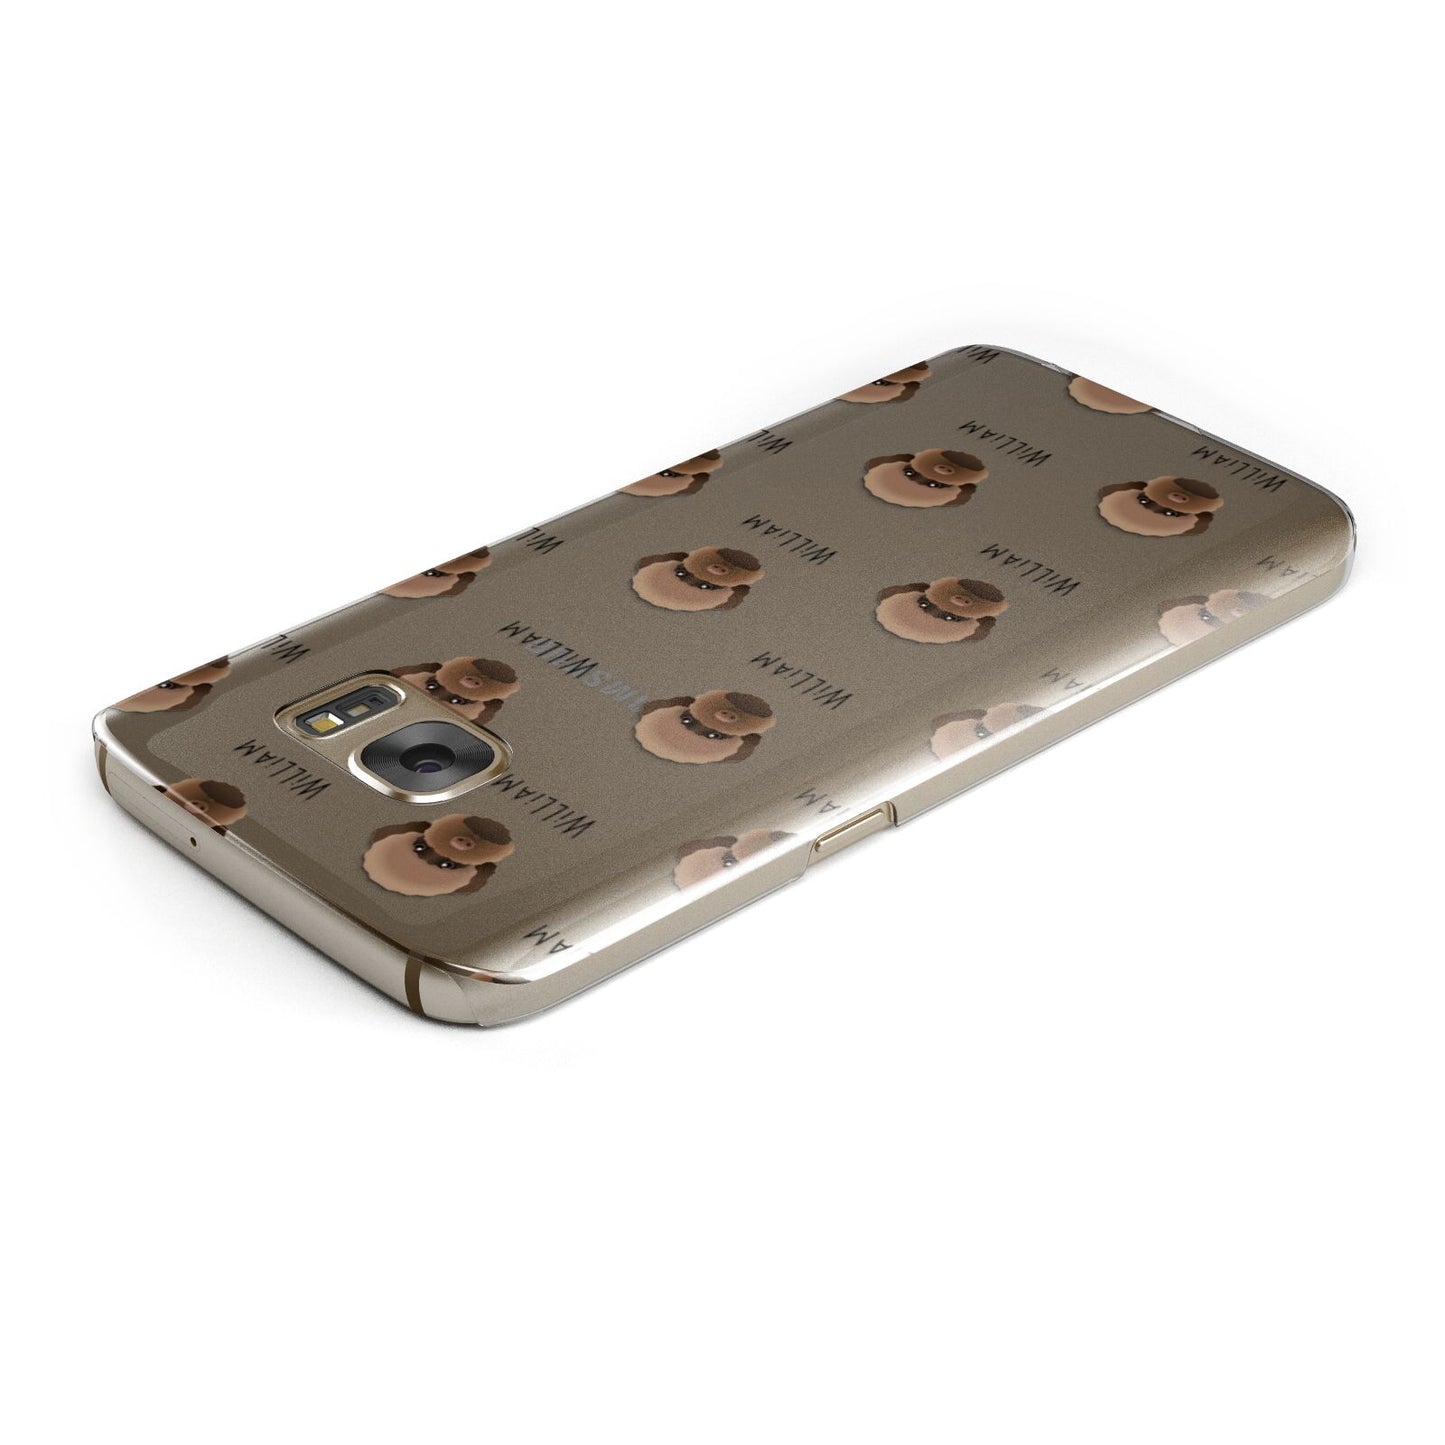 Lagotto Romagnolo Icon with Name Samsung Galaxy Case Top Cutout